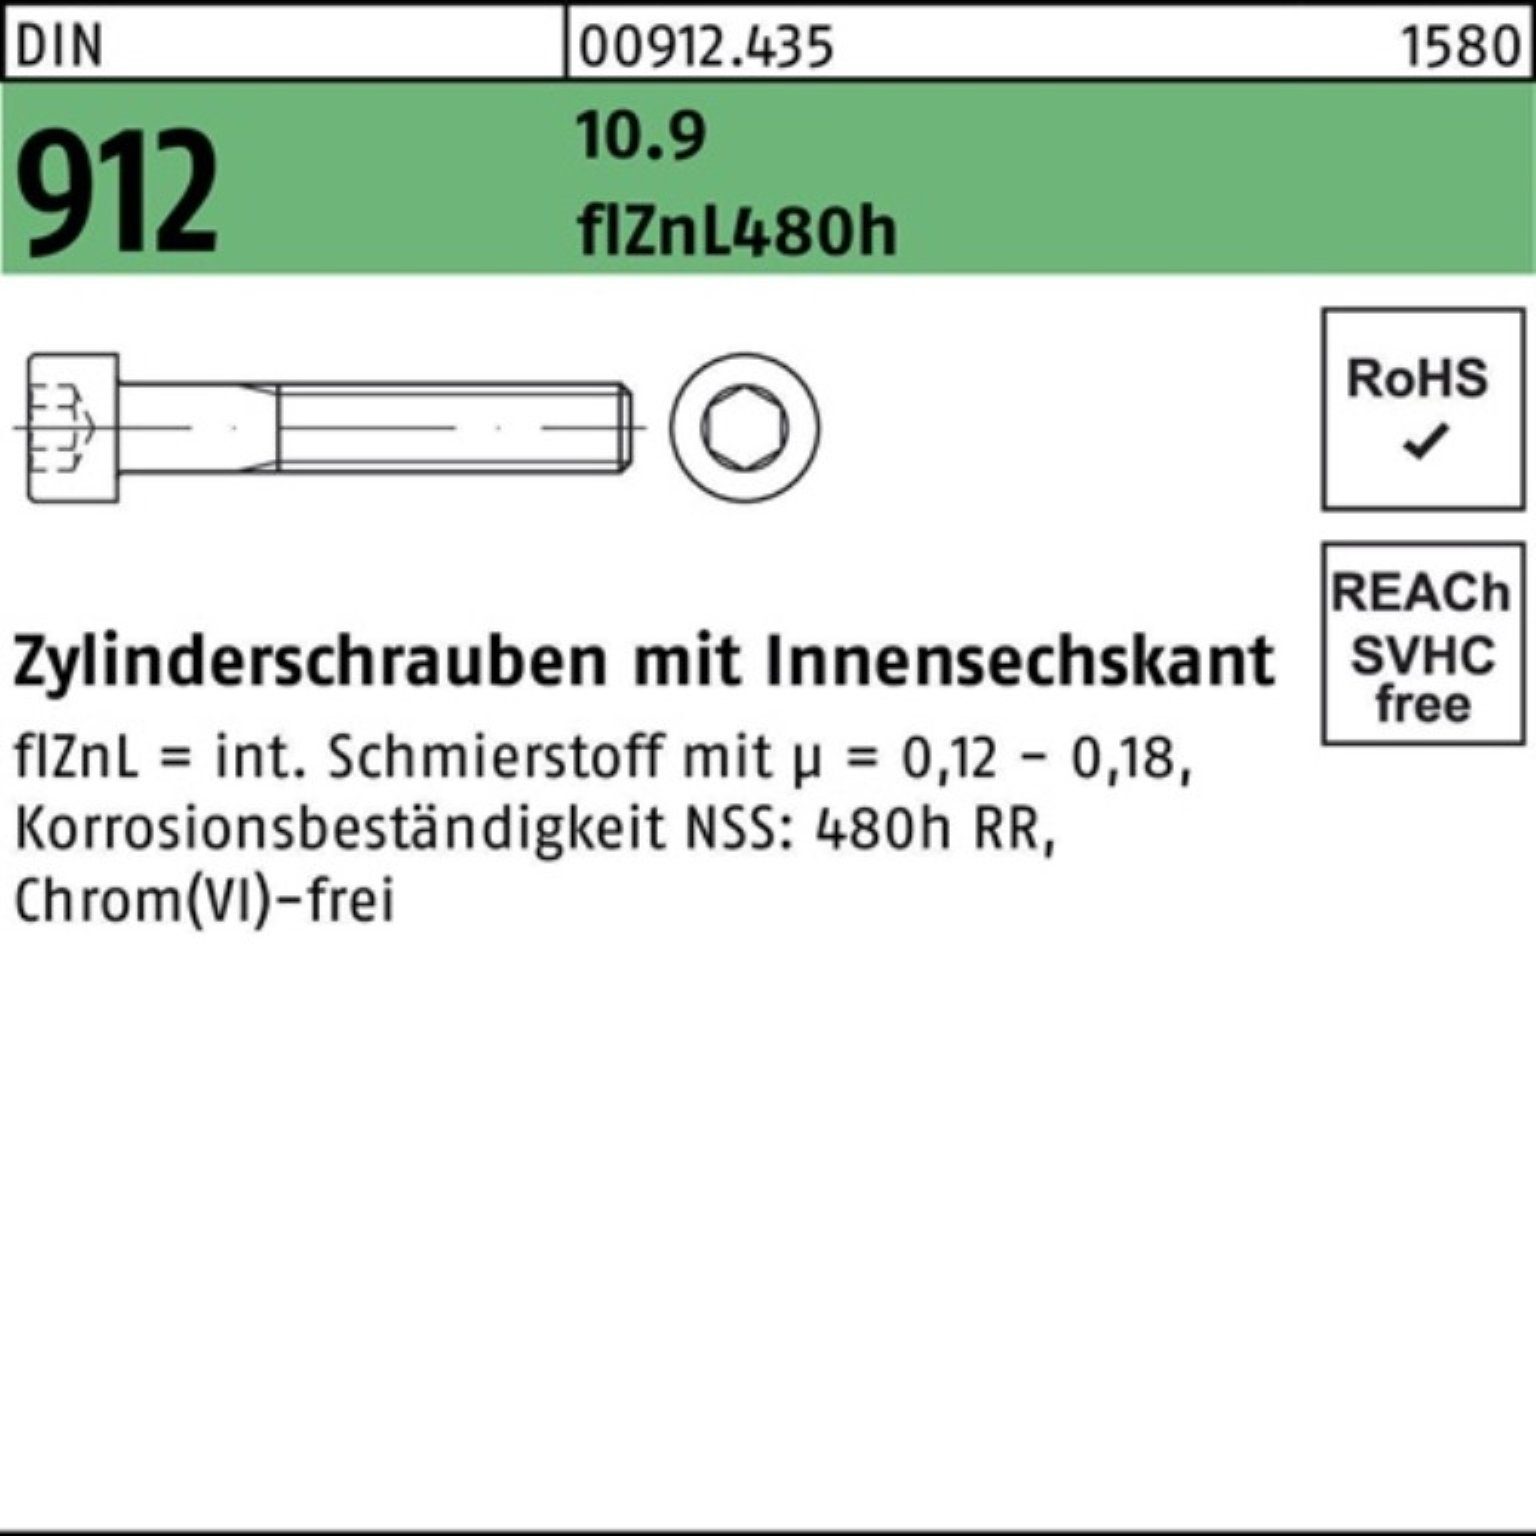 Innen-6kt flZnL/nc/x/x 200er 912 DIN Zylinderschraube Pack 10.9 Zylinderschraube Reyher M6x65